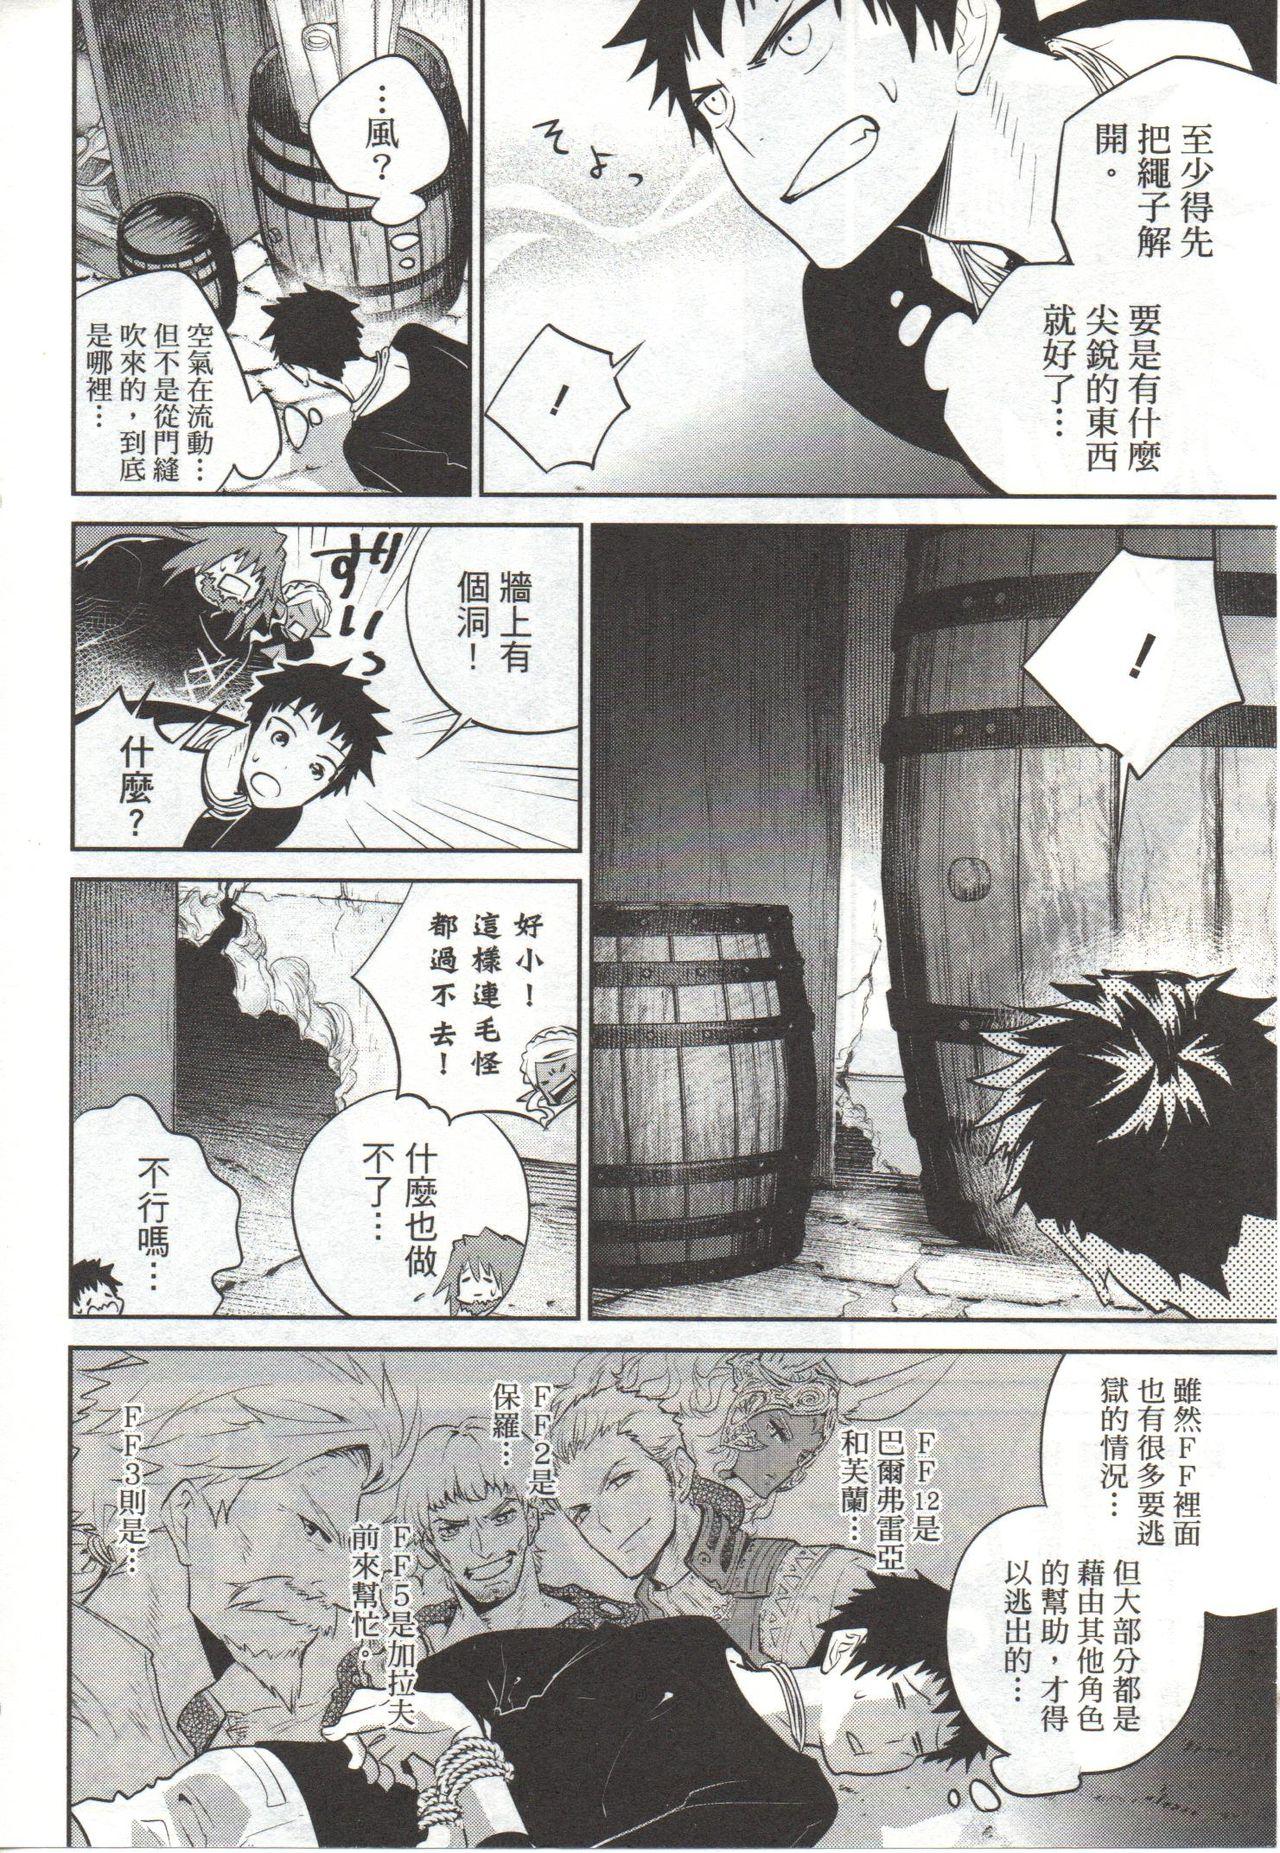 Desperate Final Fantasy Lost Stranger Vol.03 - Final fantasy Perverted - Page 11